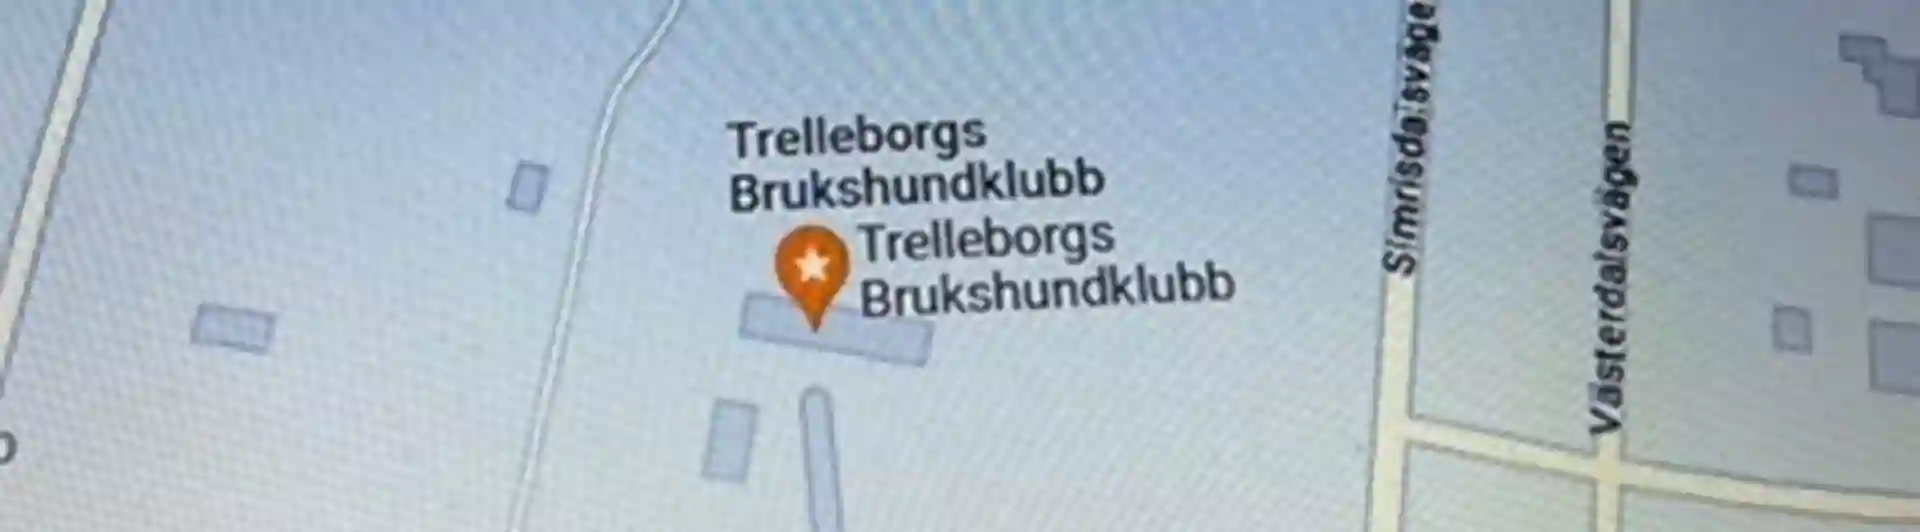 Kartbild visande Trelleborgs Brukshundklubb